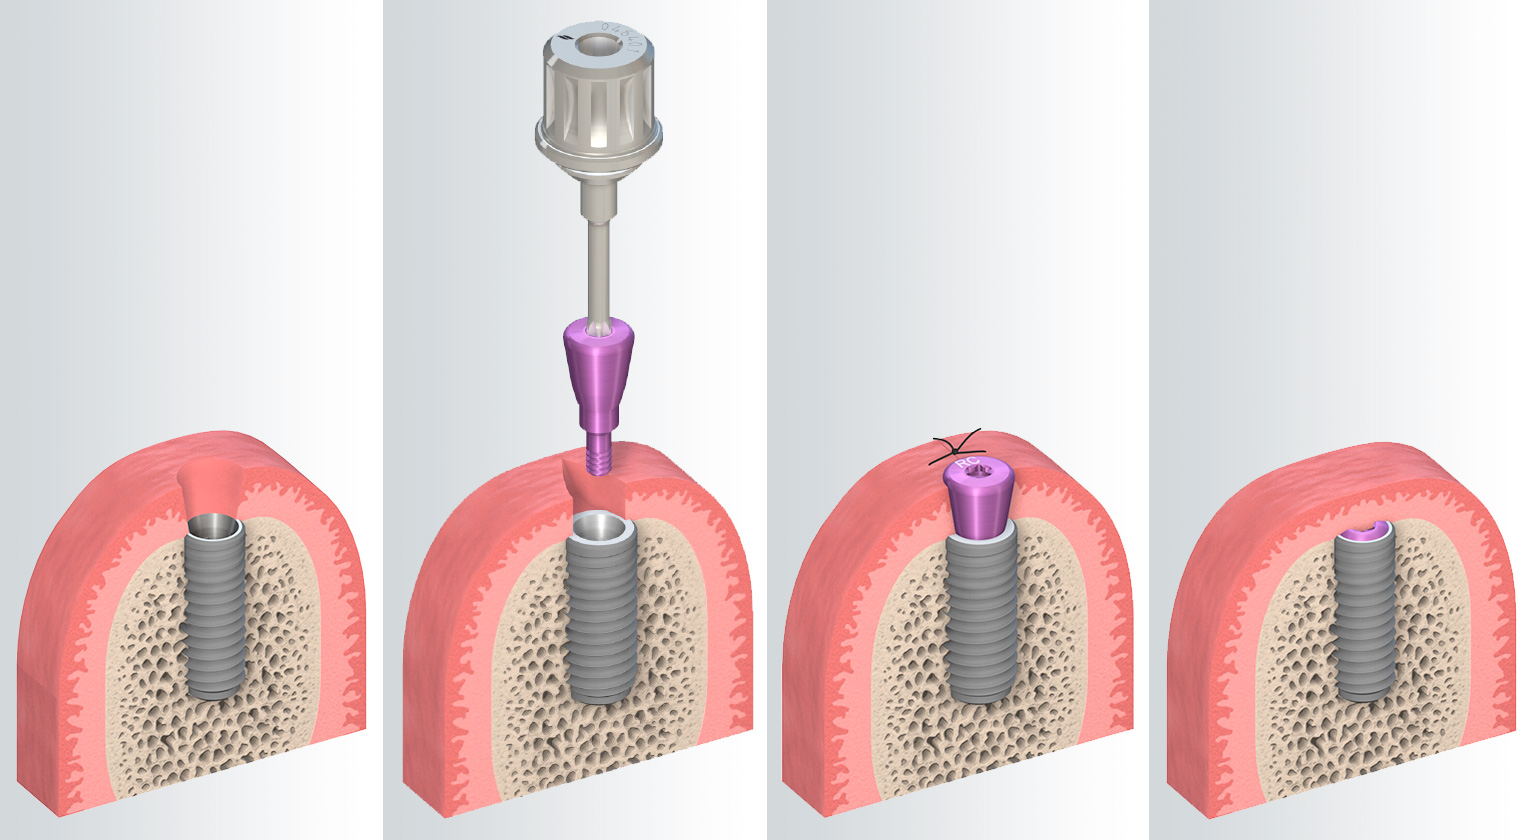 die gedeckte Einheilung des Implantates bietet mehr Schutz währen des Heilprozesses